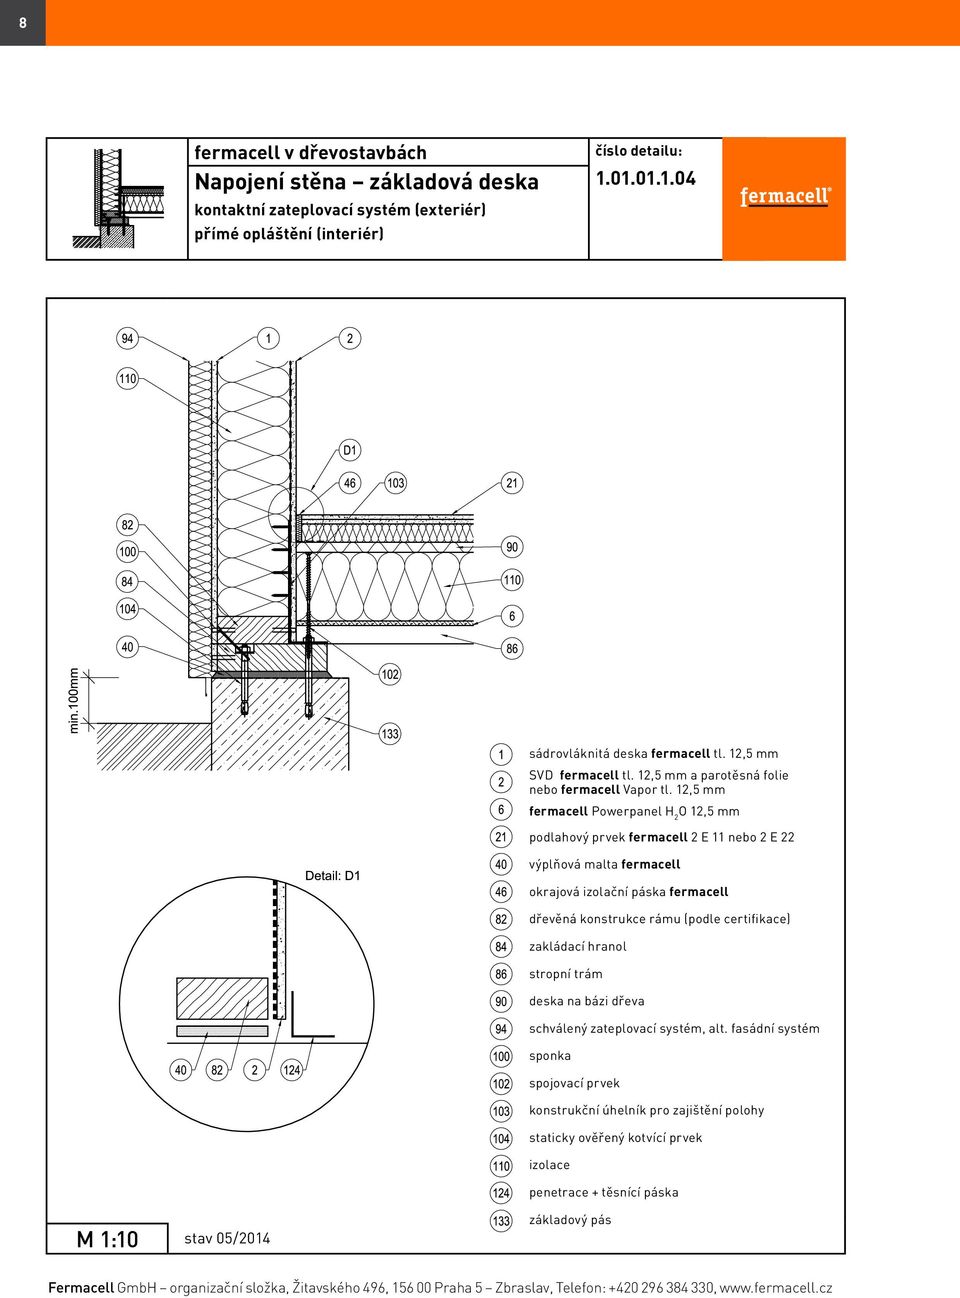 fermacell Katalog detailů - PDF Stažení zdarma